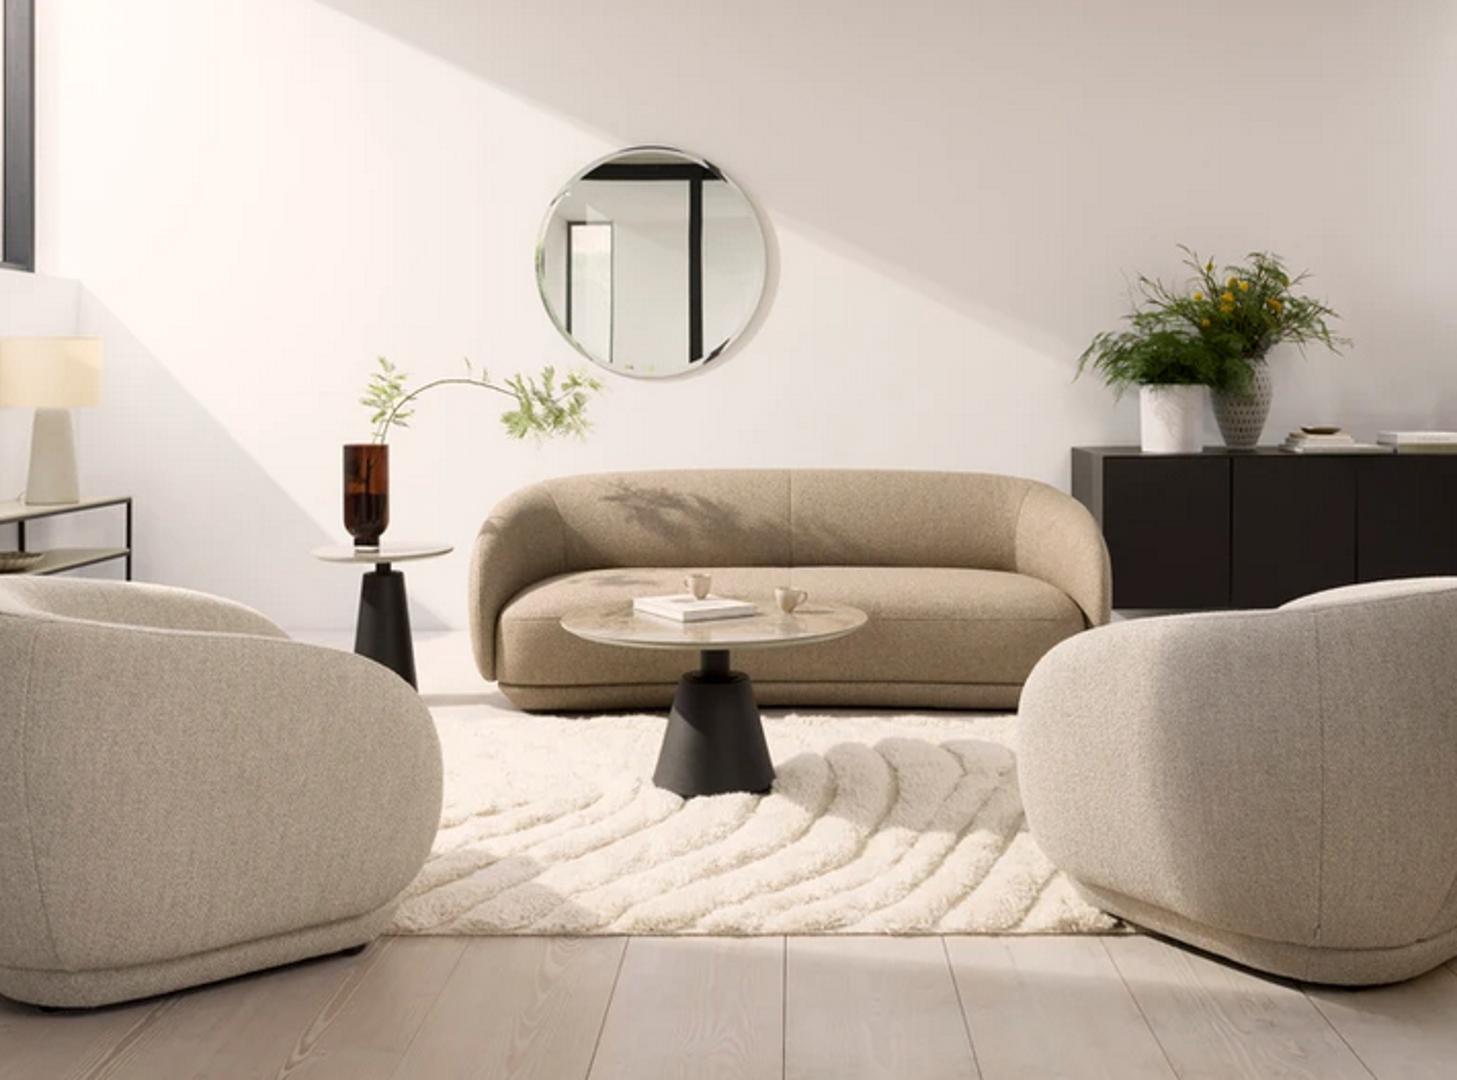 Osim što su važan komad za osiguravanje maksimalne udobnosti, jastučići su odlična dekoracija kojom se može ostvariti osvježenje prostora